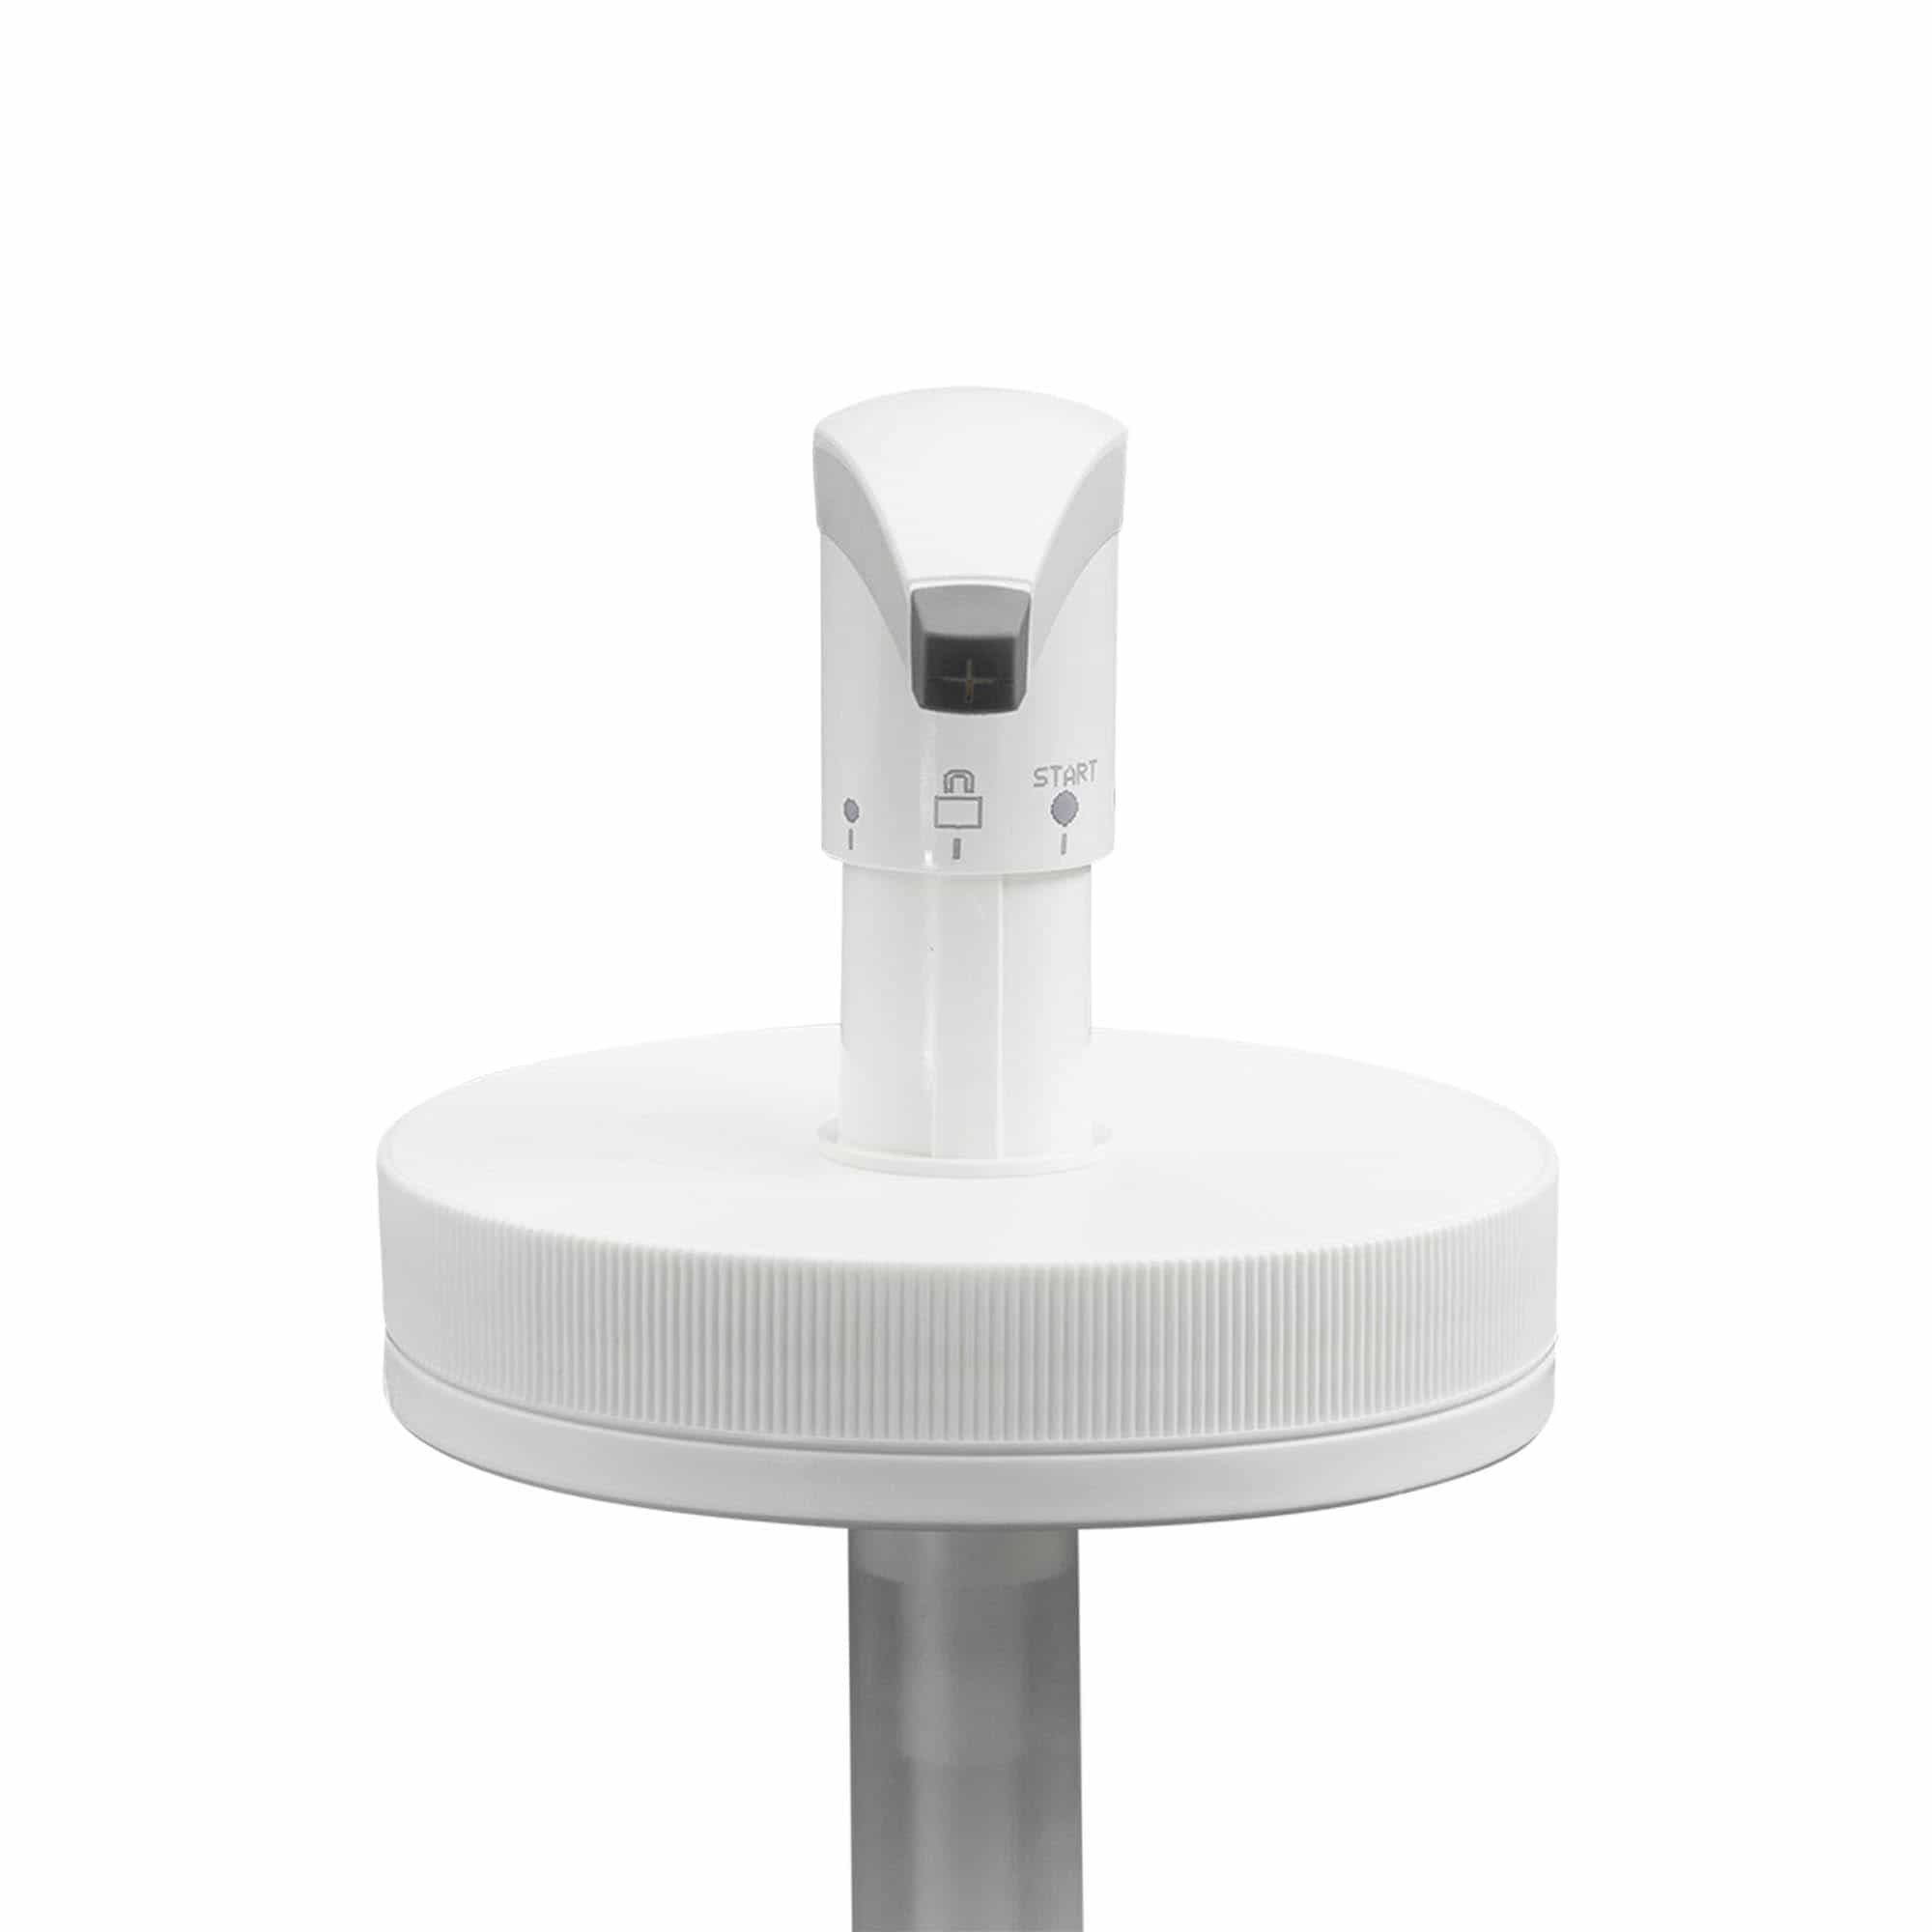 Dispenser pump for 1,240 ml 'Securibox', PE plastic, white, for opening: screw cap